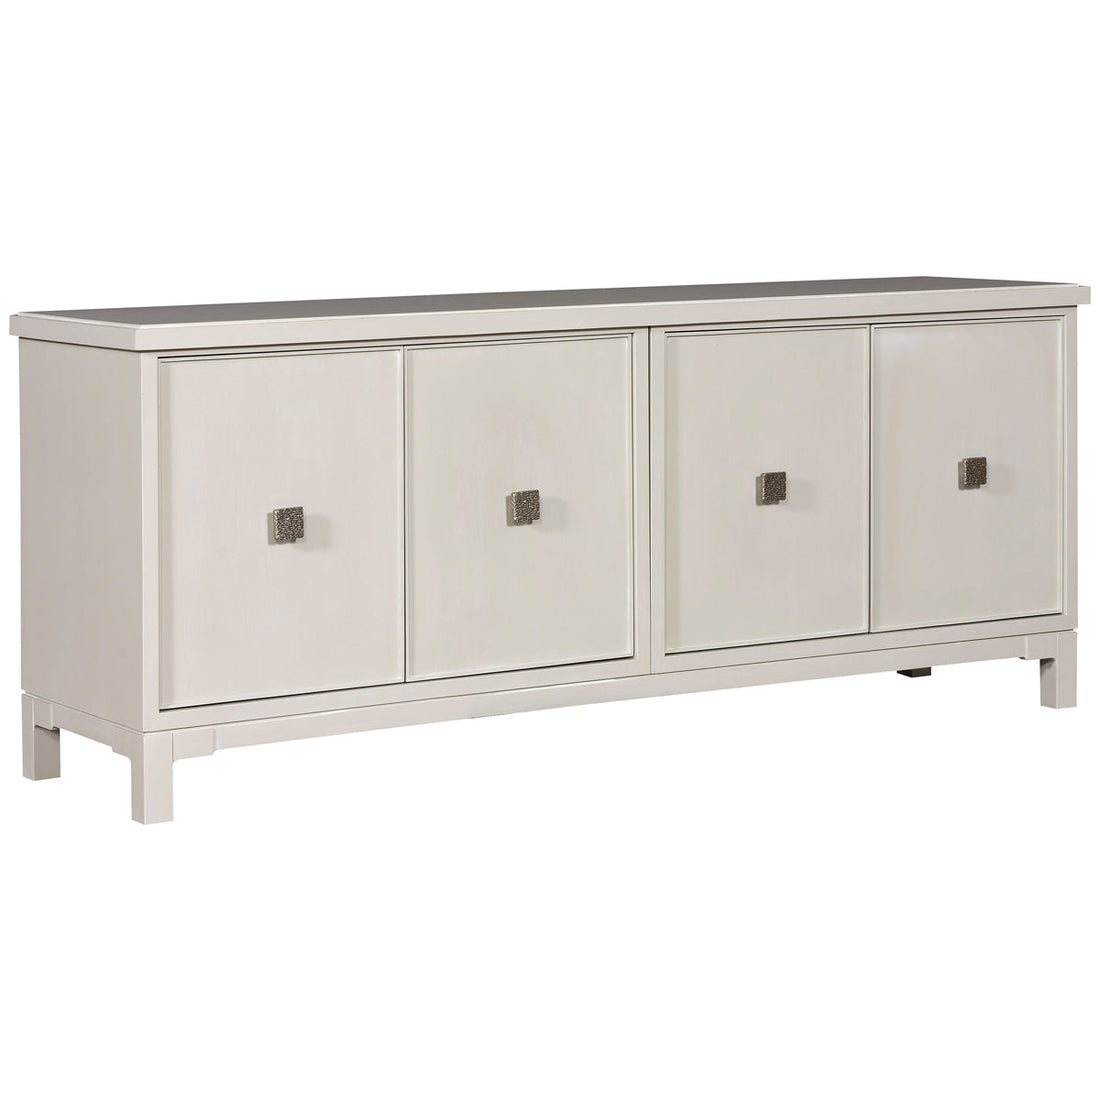 Vanguard Furniture Solene Lifestyle 4-Door Serendipity Cabinet